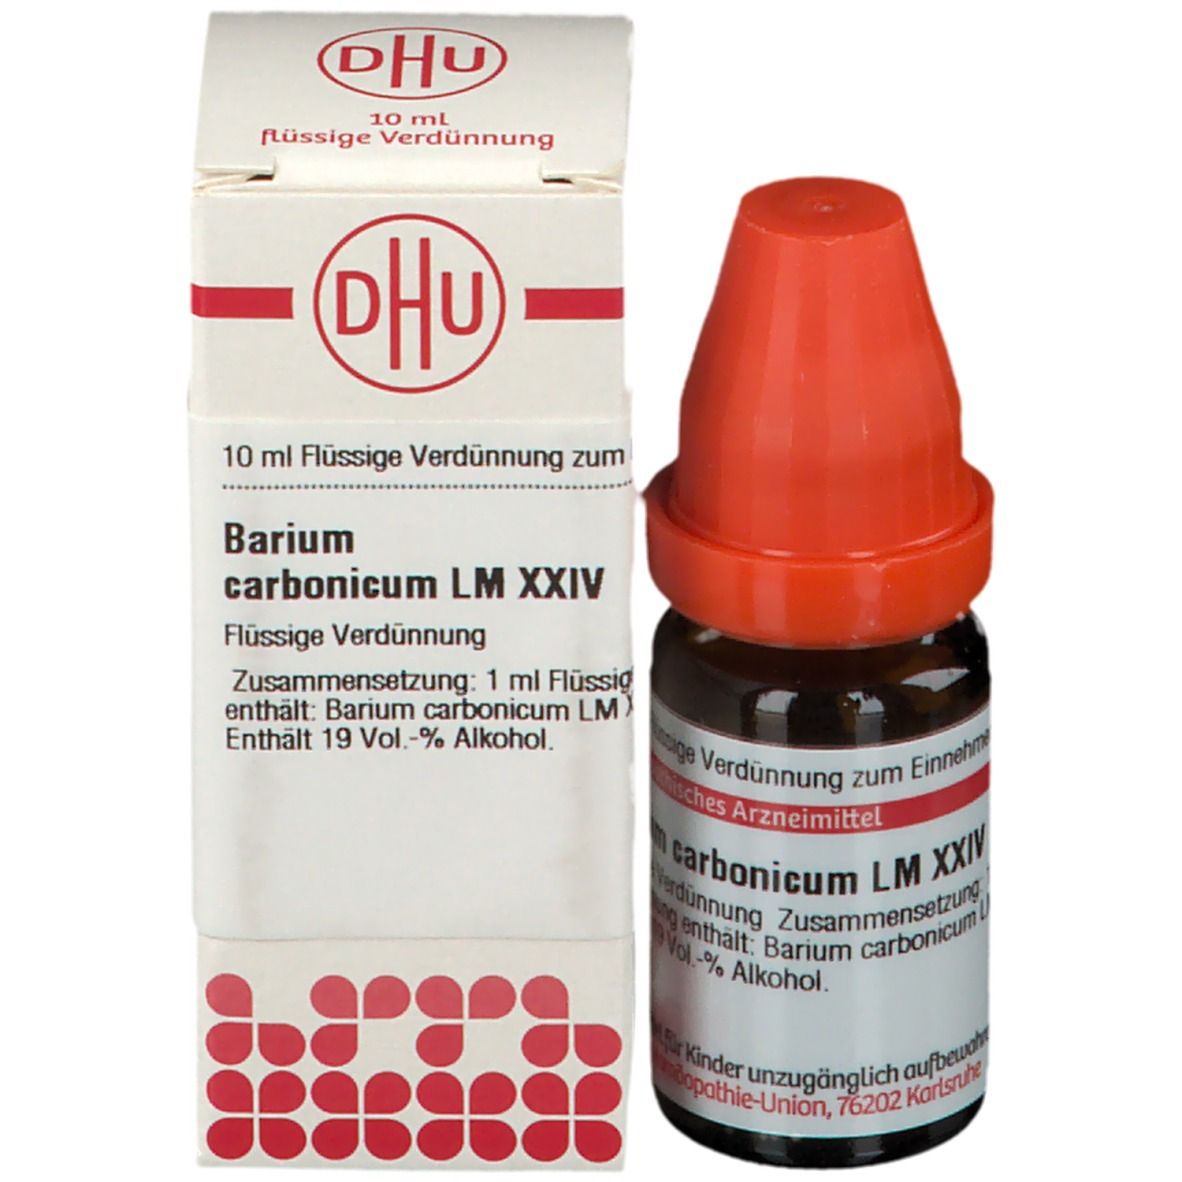 DHU Barium Carbonicum LM XXIV